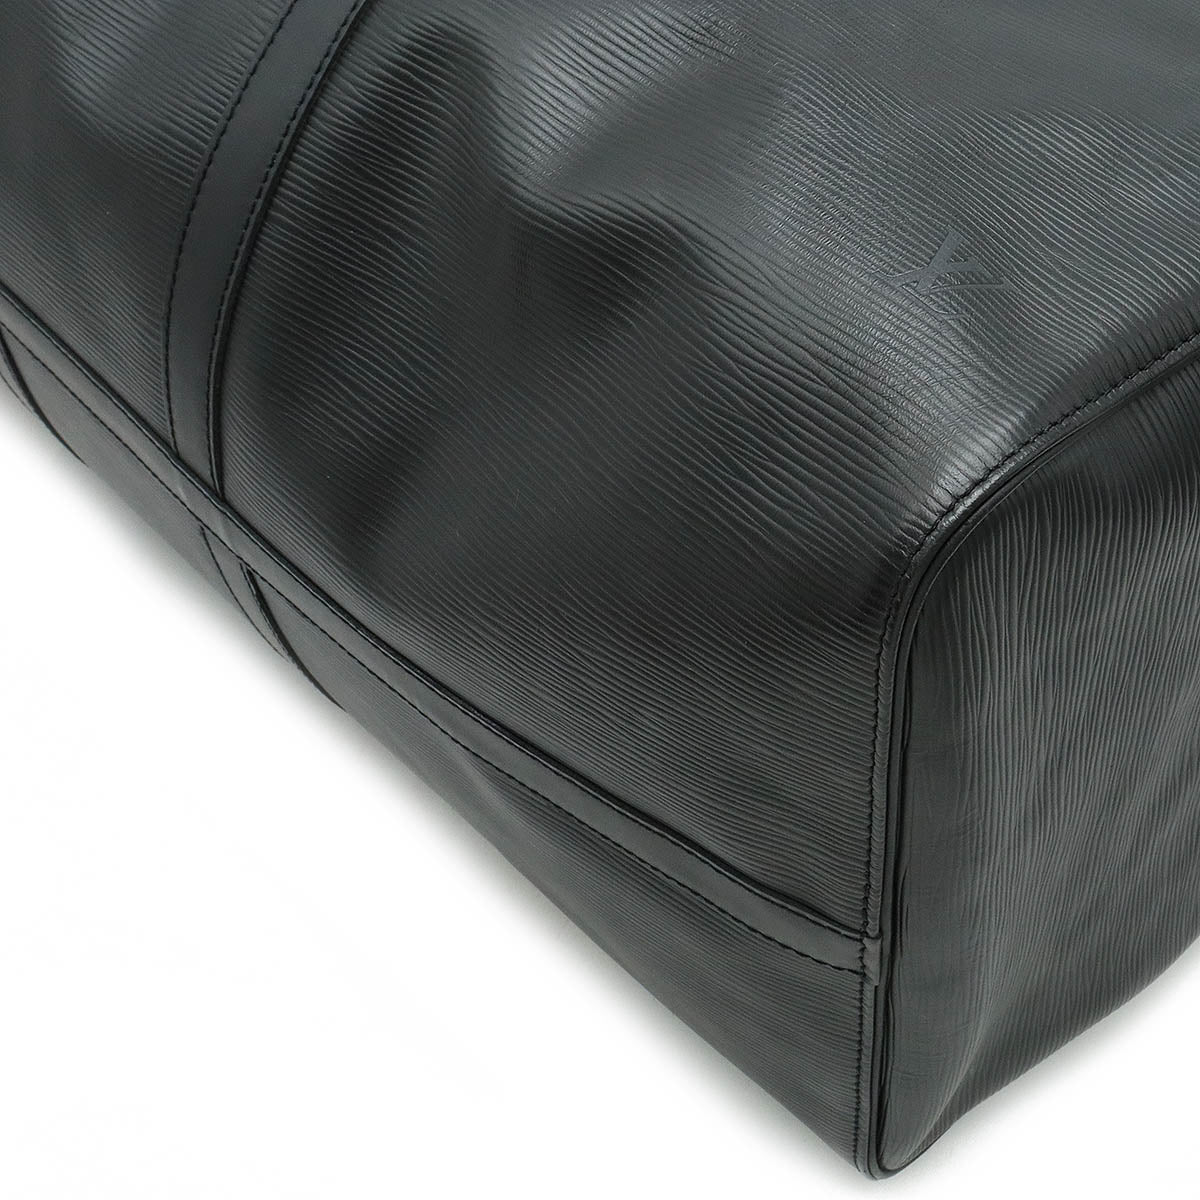 LOUIS VUITTON Louis Vuitton Epic Kypopur 55 Boston Bag Travel Bag Noir Black New M59142